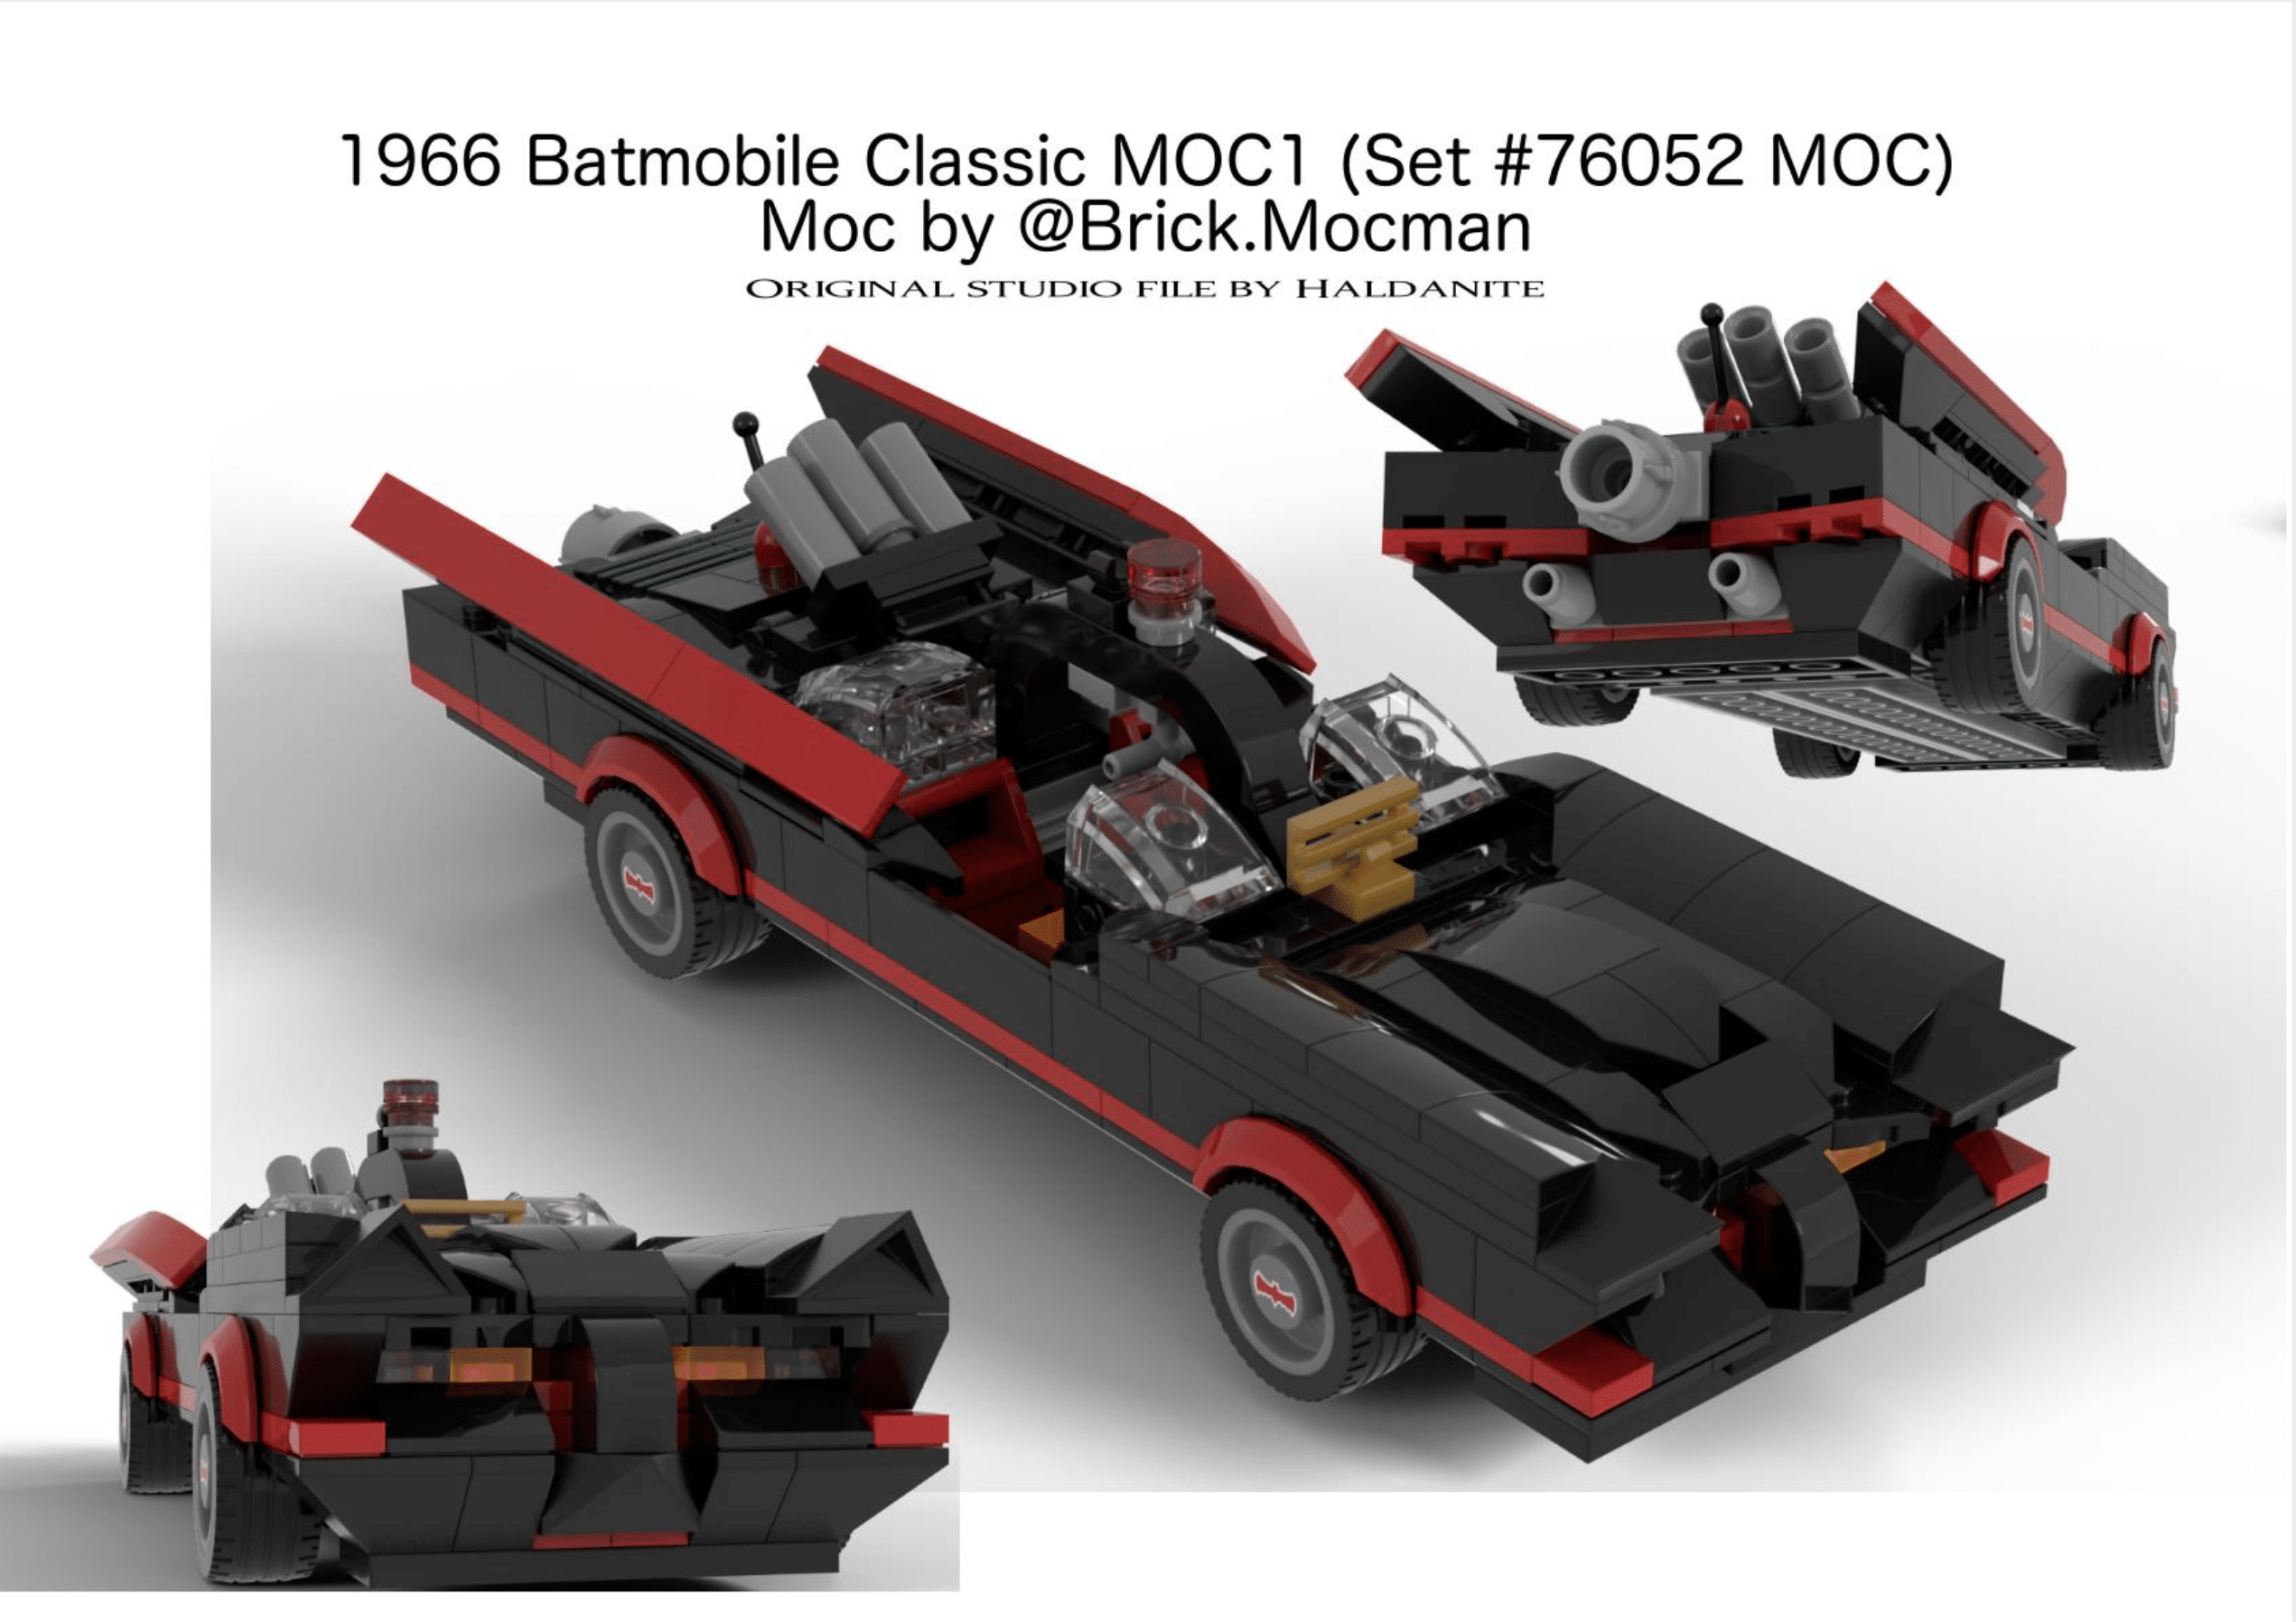 Batmobile Classic 1966 (Bat man TV Show) - Set MOC instructions